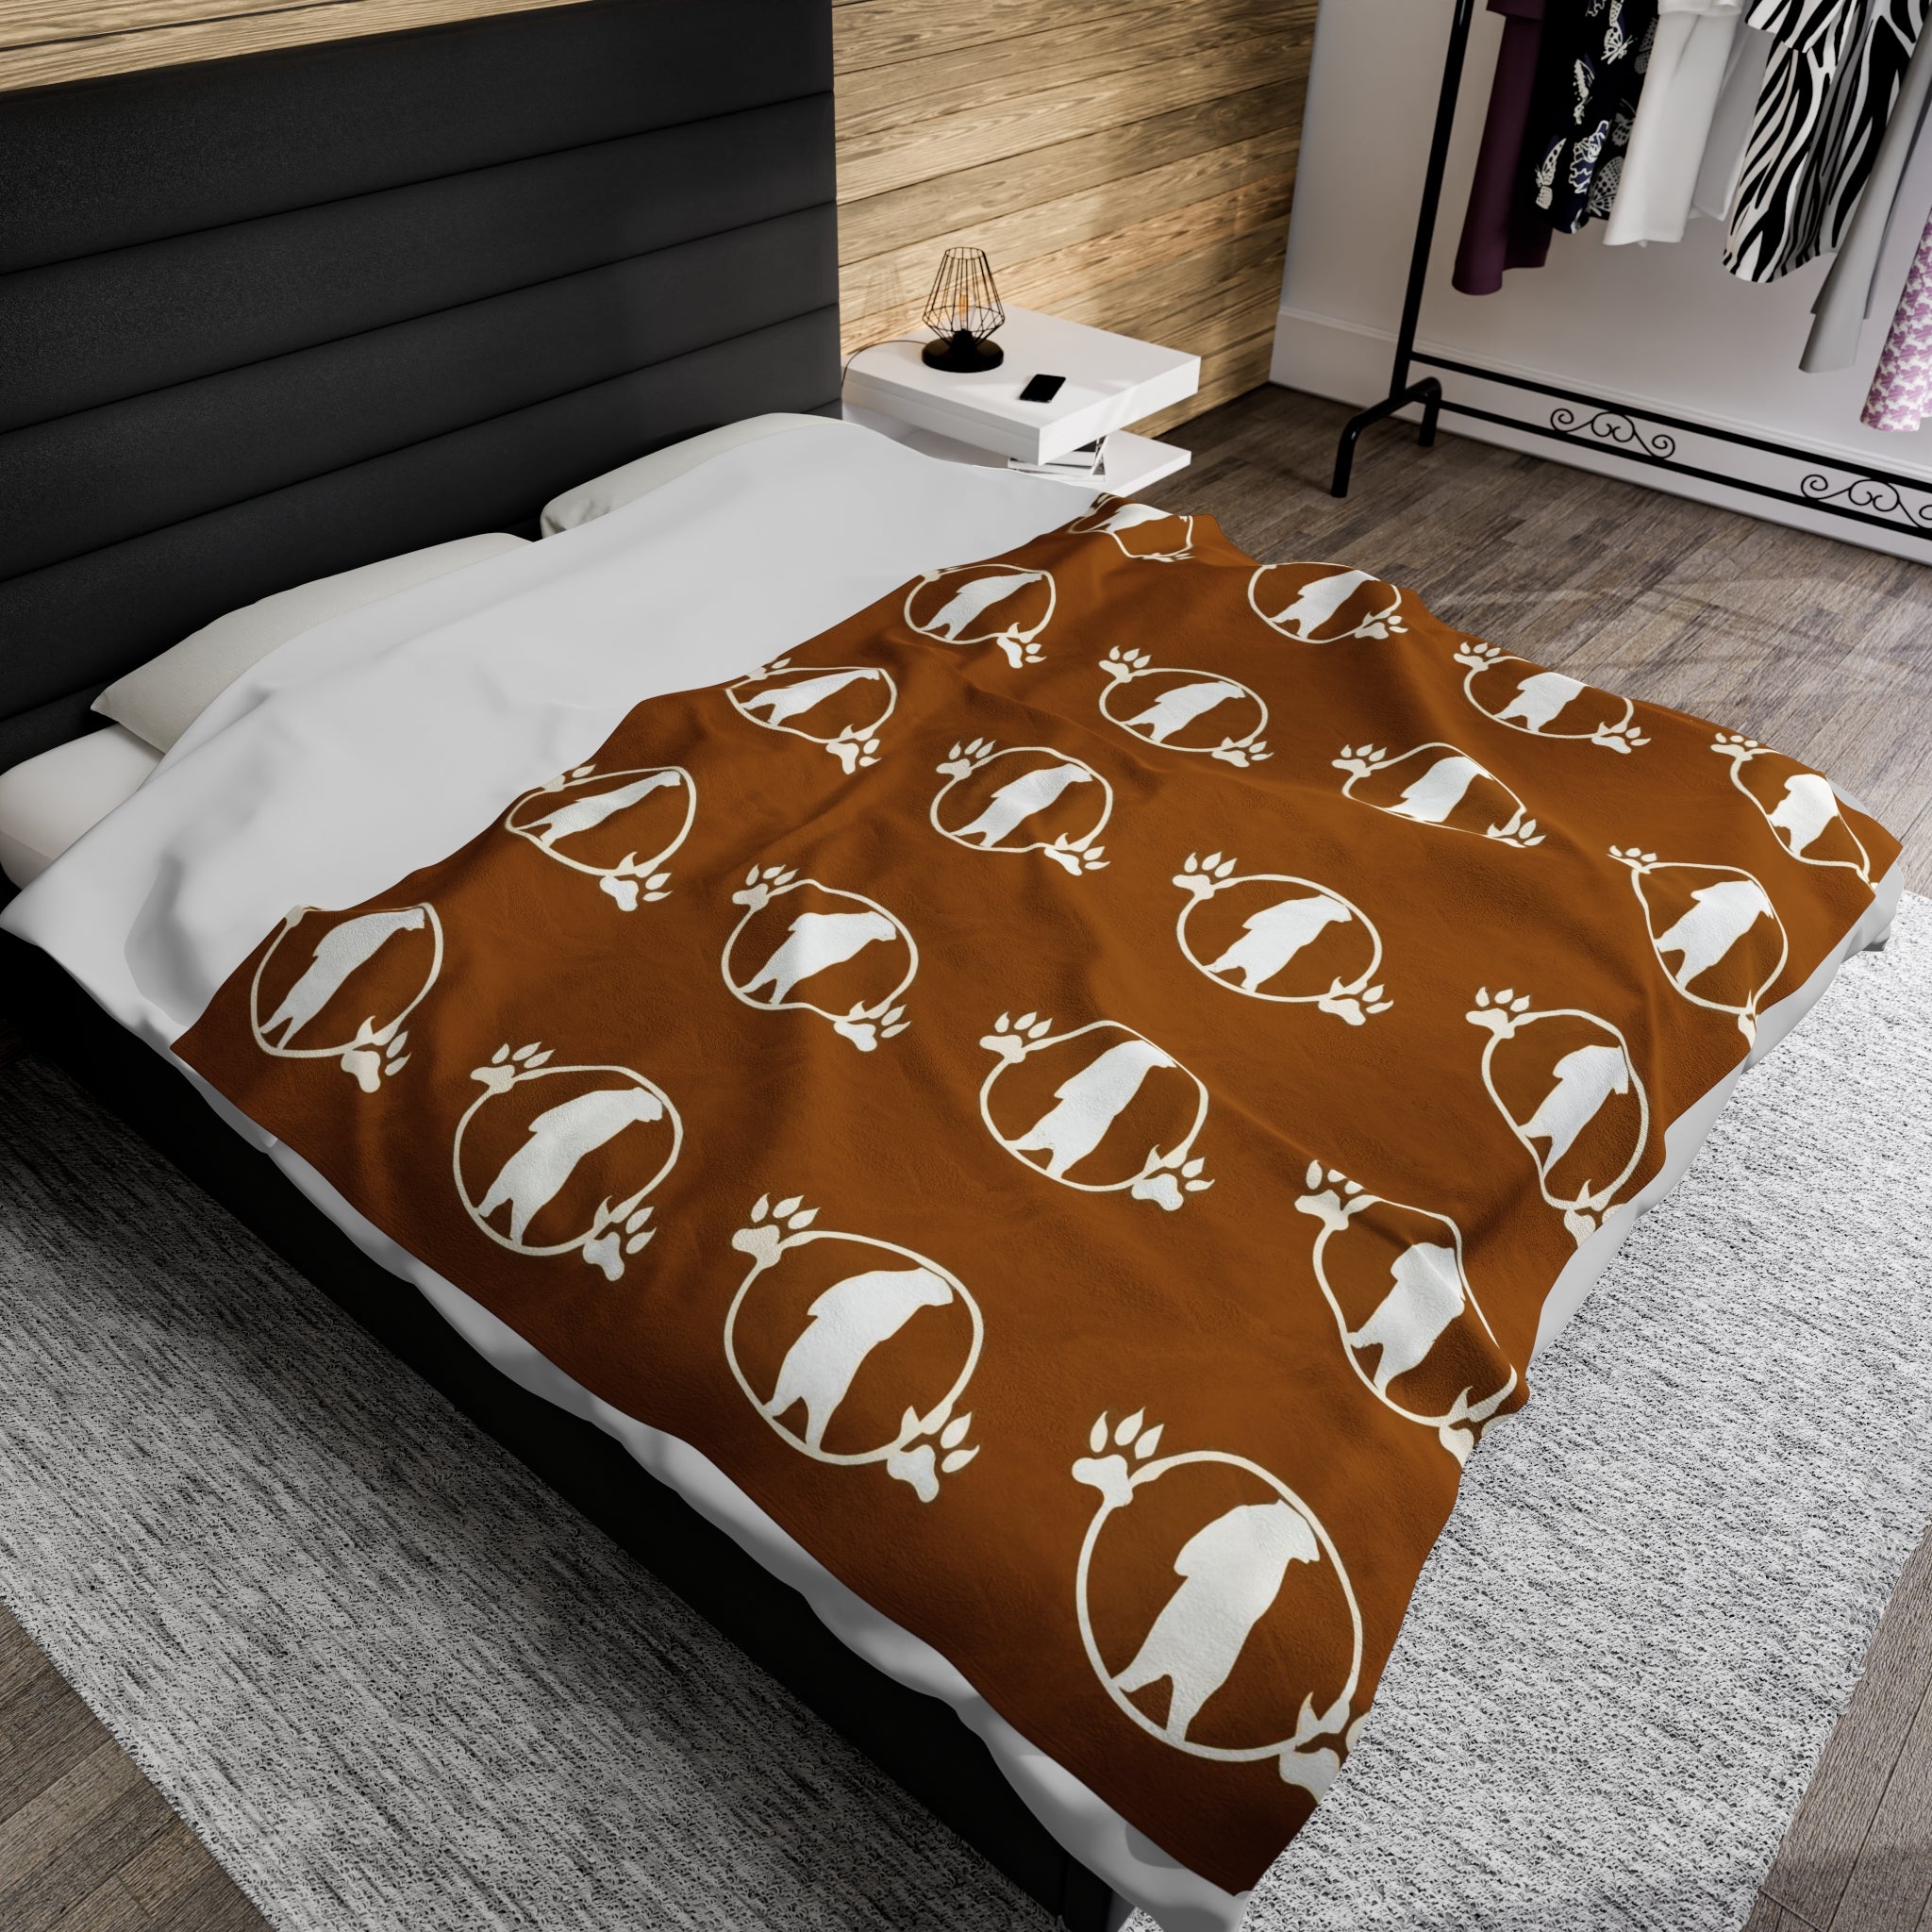 Manta de felpa de pana marrón con diseño de oso campestre